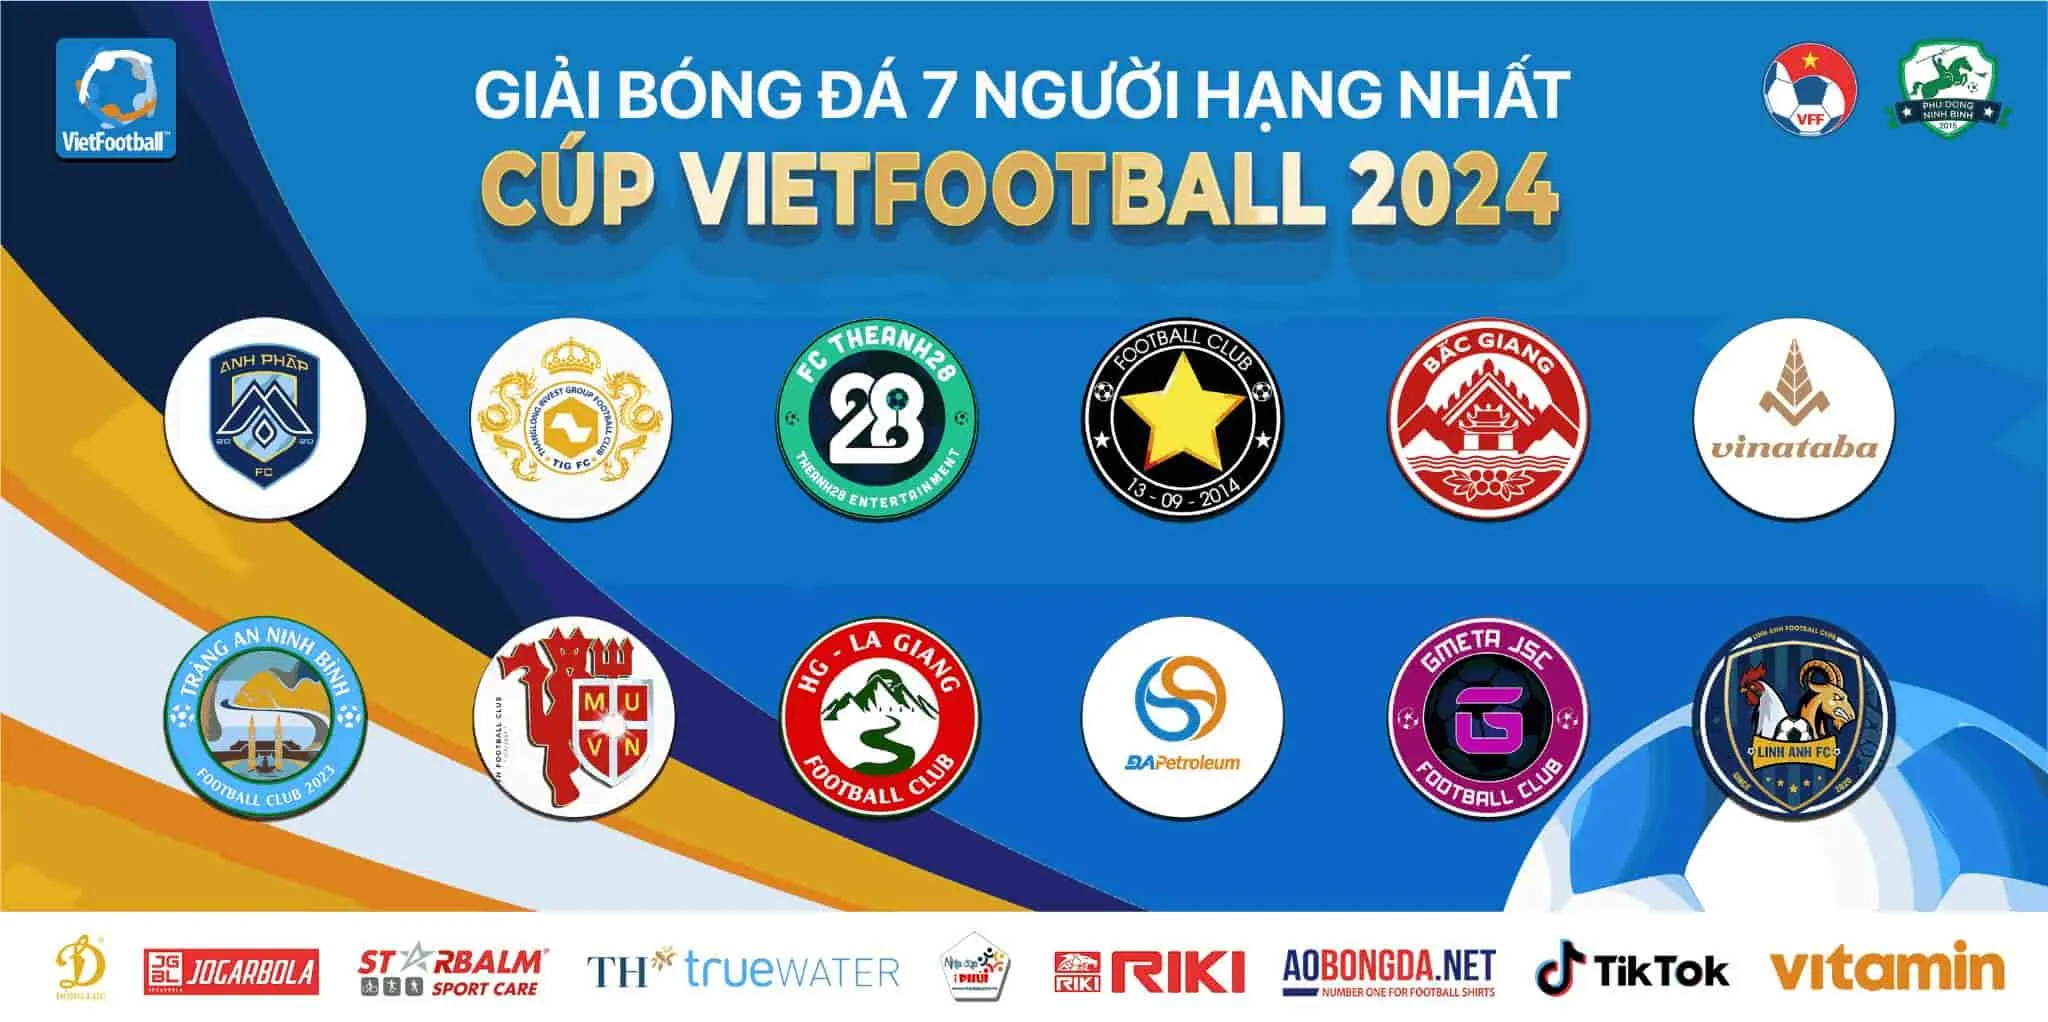 Chính thức khởi tranh giải HL1-S8 Giải bóng đá 7 người hạng Nhất Cup Vietfootball 2024